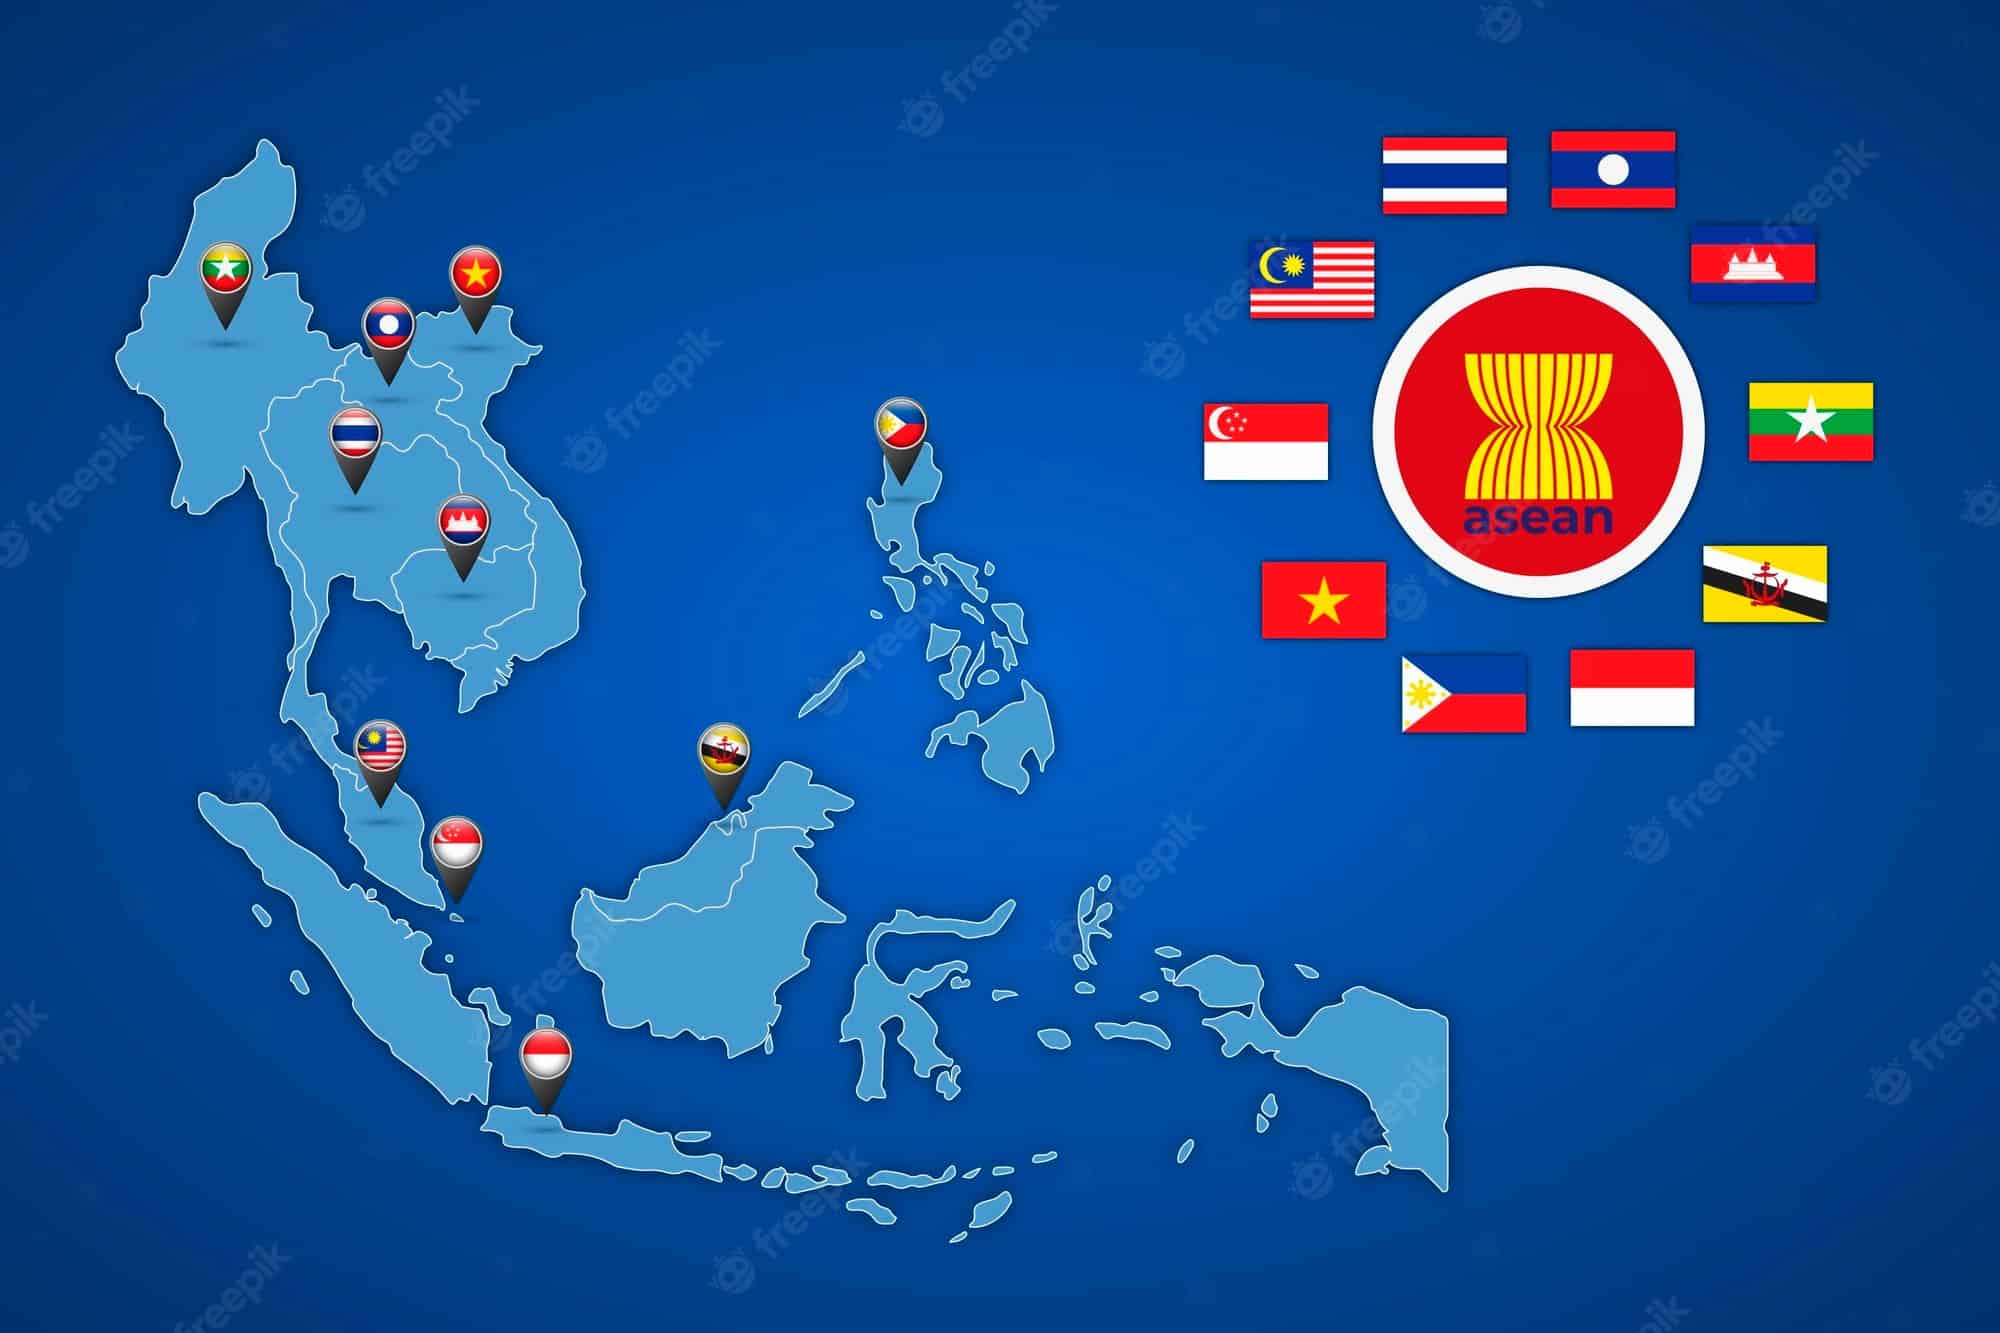 ASEAN hiện có bao nhiêu quốc gia thành viên?
